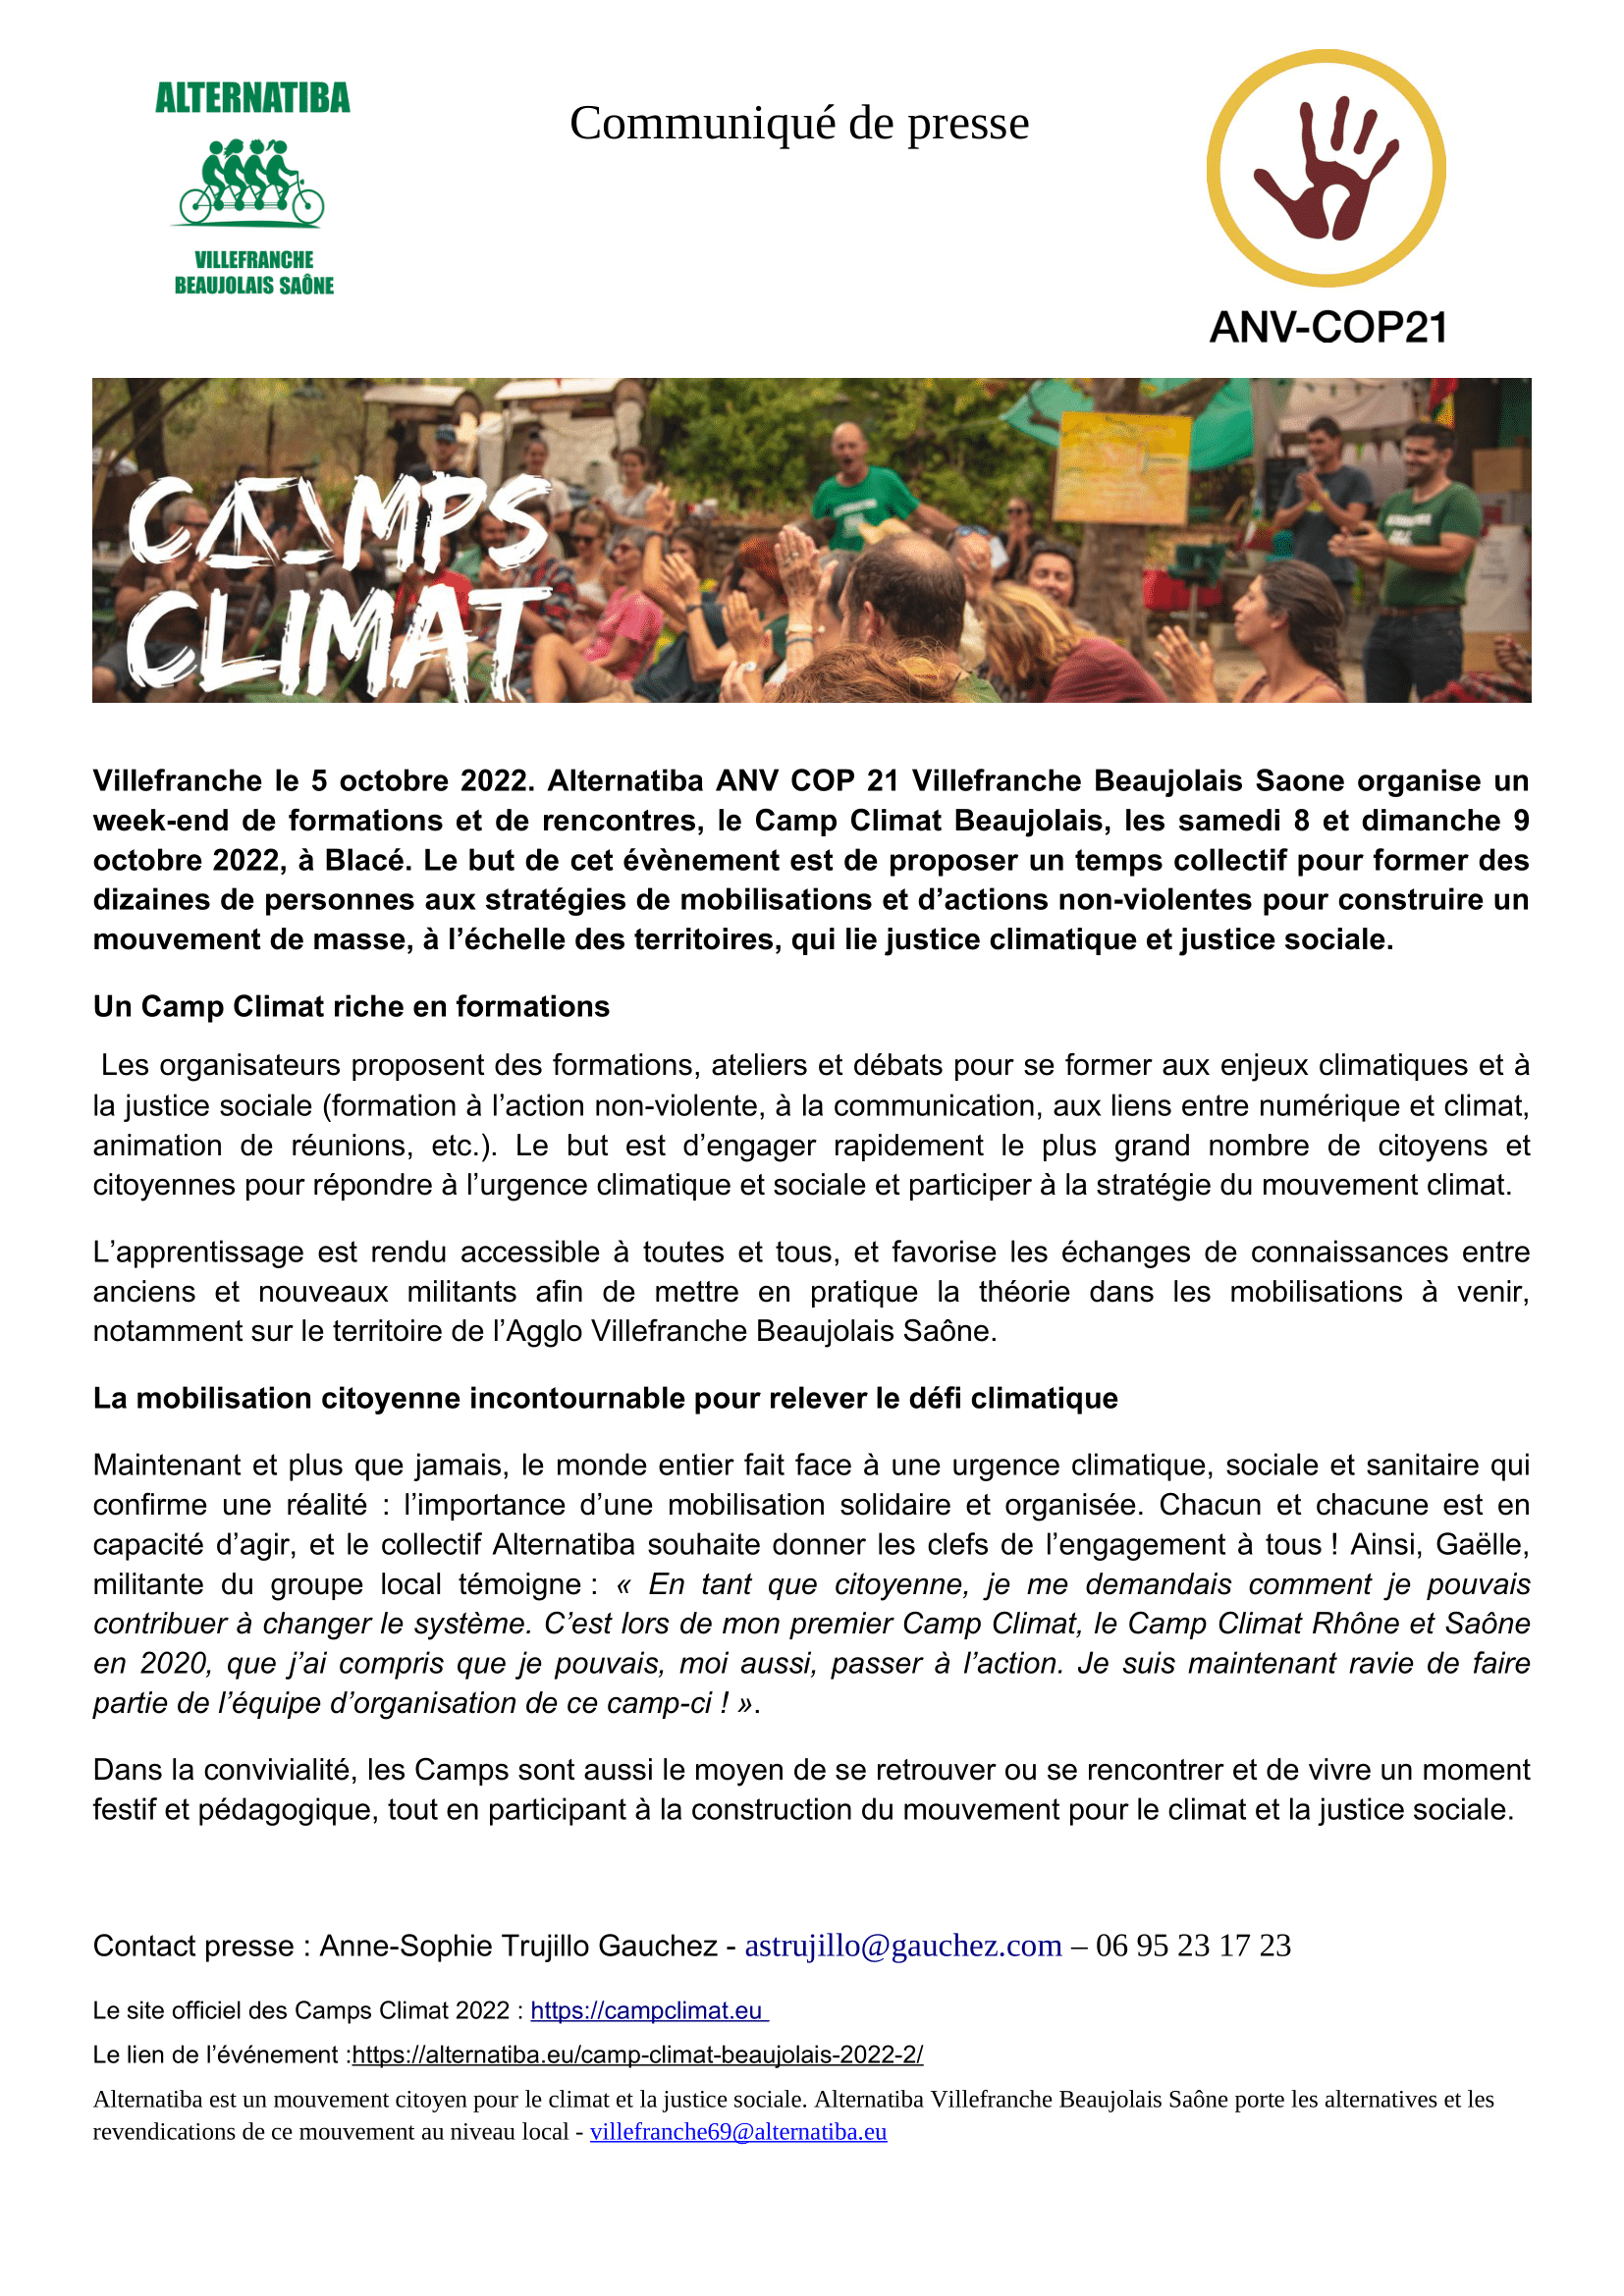 Camp Climat Beaujolais 2022 Communiqué de presse : Image à la une